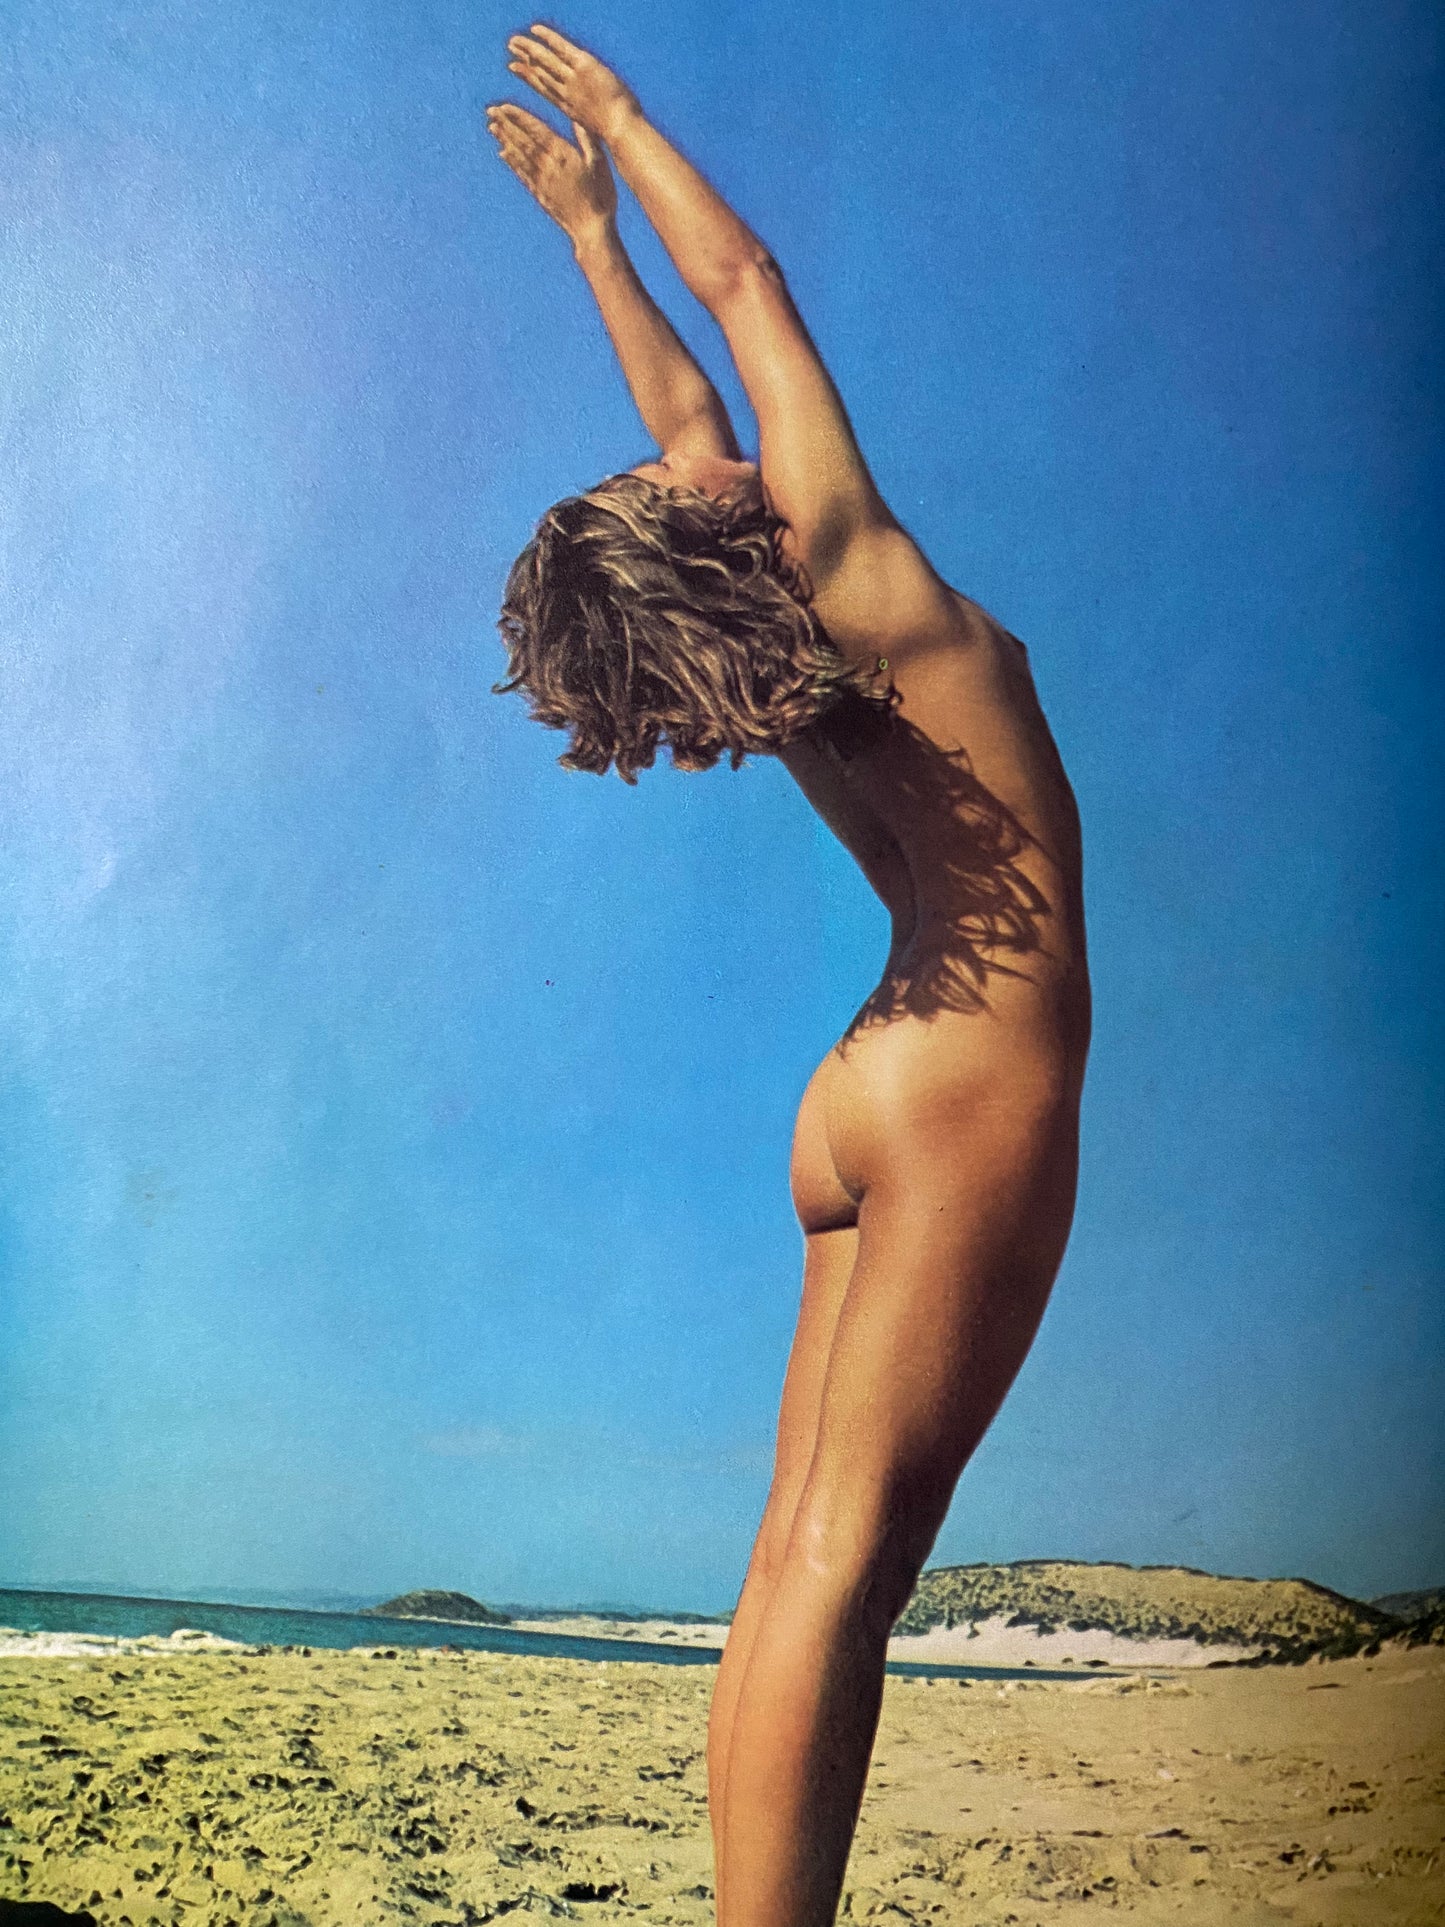 Naked Yoga (1972)